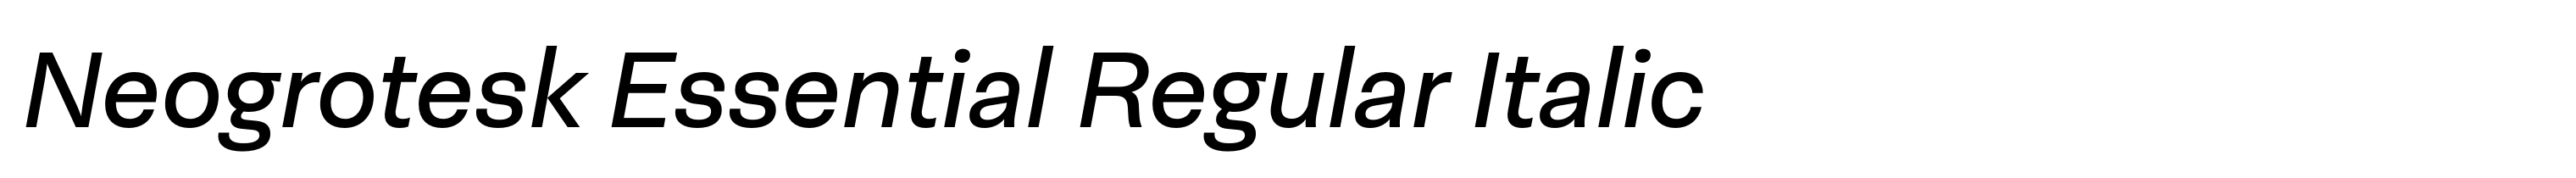 Neogrotesk Essential Regular Italic